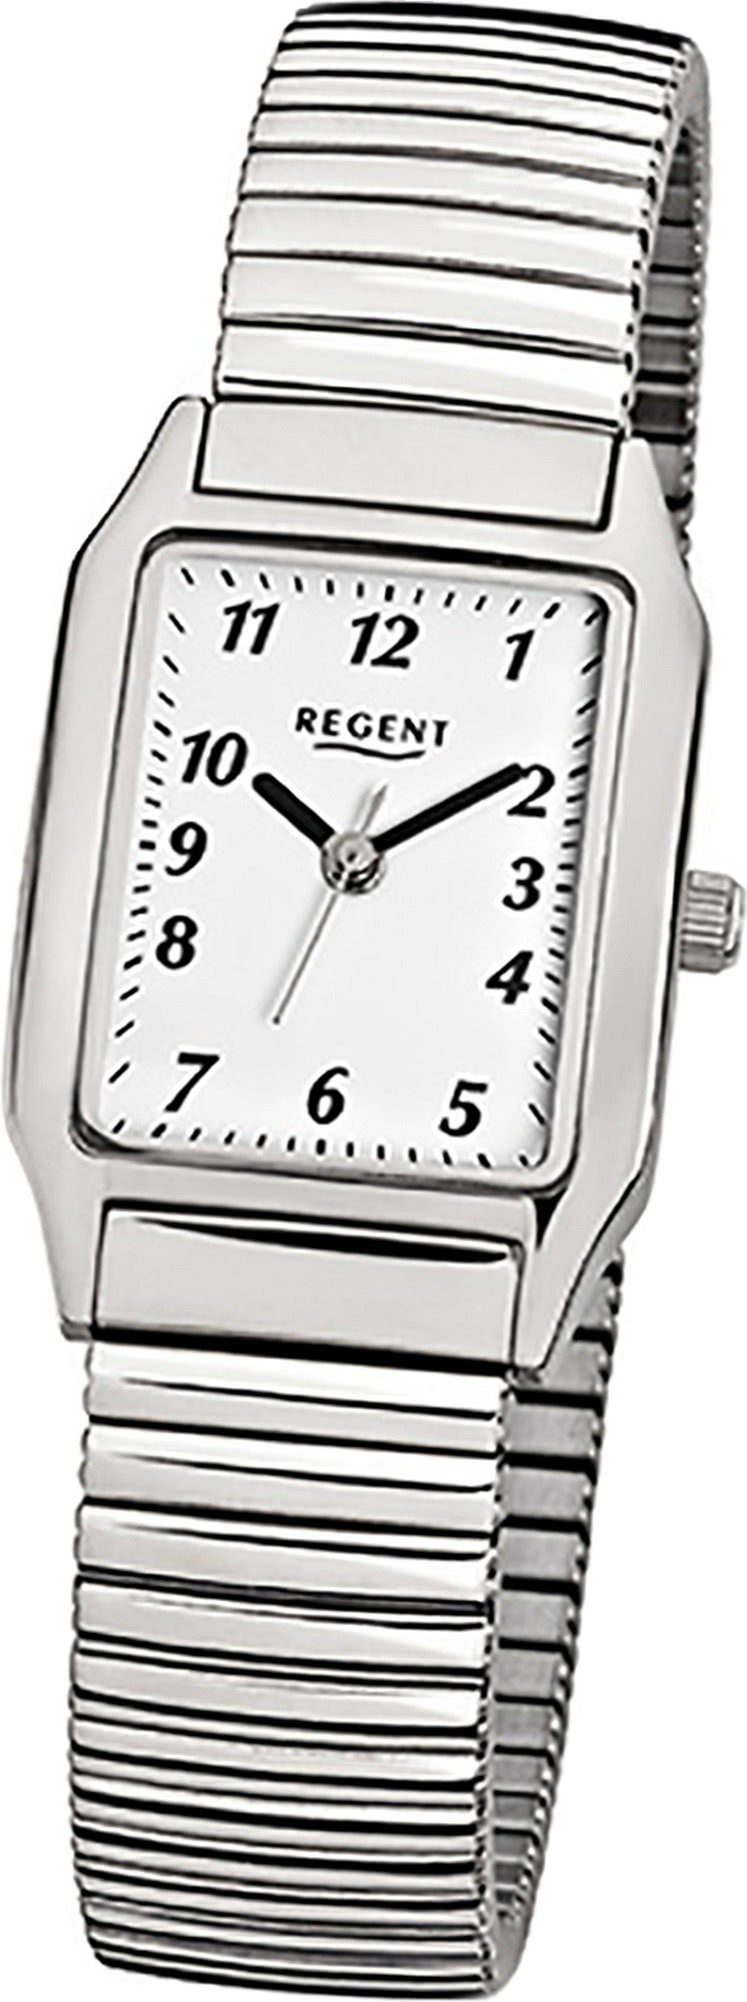 Regent Quarzuhr Regent Stahl Damen Uhr F-268 Quarzuhr, Damenuhr Edelstahlarmband silber, eckiges Gehäuse, klein (ca. 23x26mm)